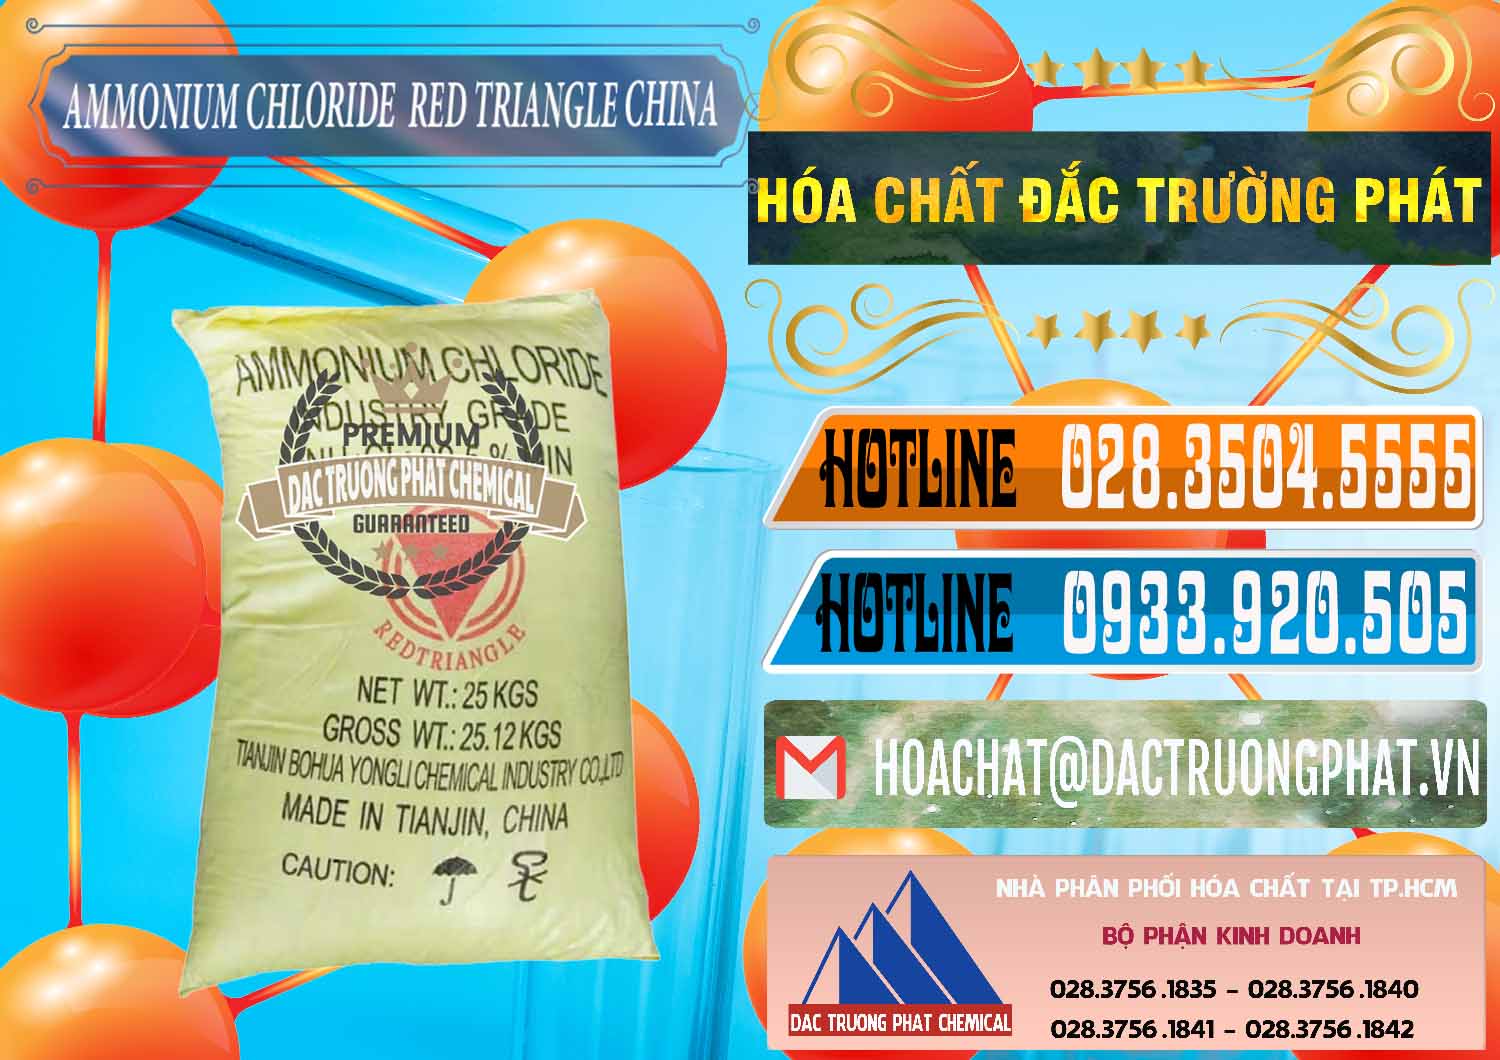 Chuyên bán - cung ứng Ammonium Chloride - Muối Lạnh NH4CL Red Triangle Trung Quốc China - 0377 - Cung cấp & phân phối hóa chất tại TP.HCM - stmp.net